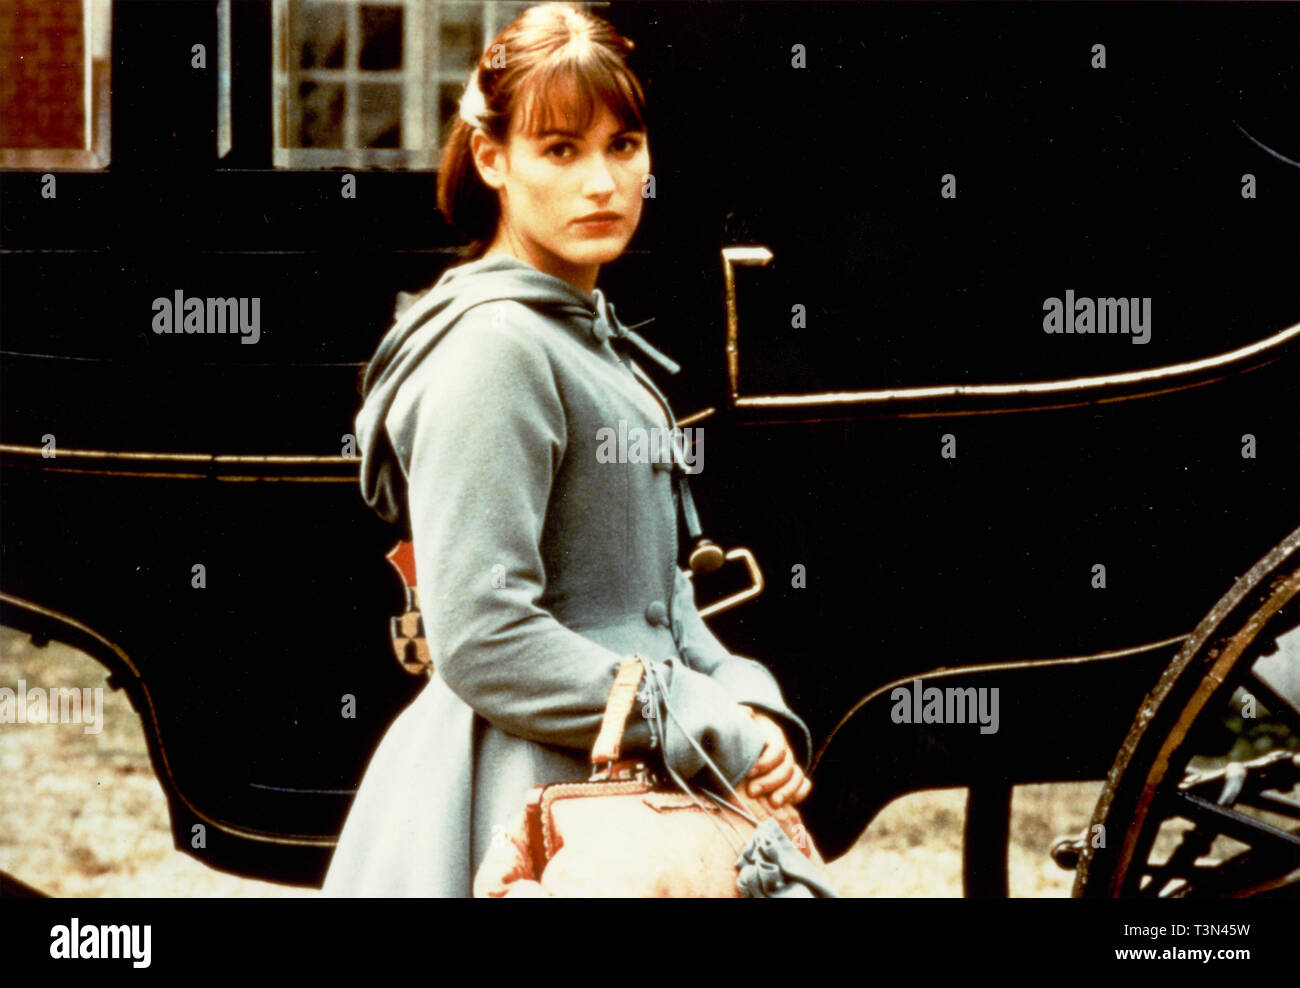 L'actrice française Judith Godreche dans le film ridicule, années 90 Banque D'Images